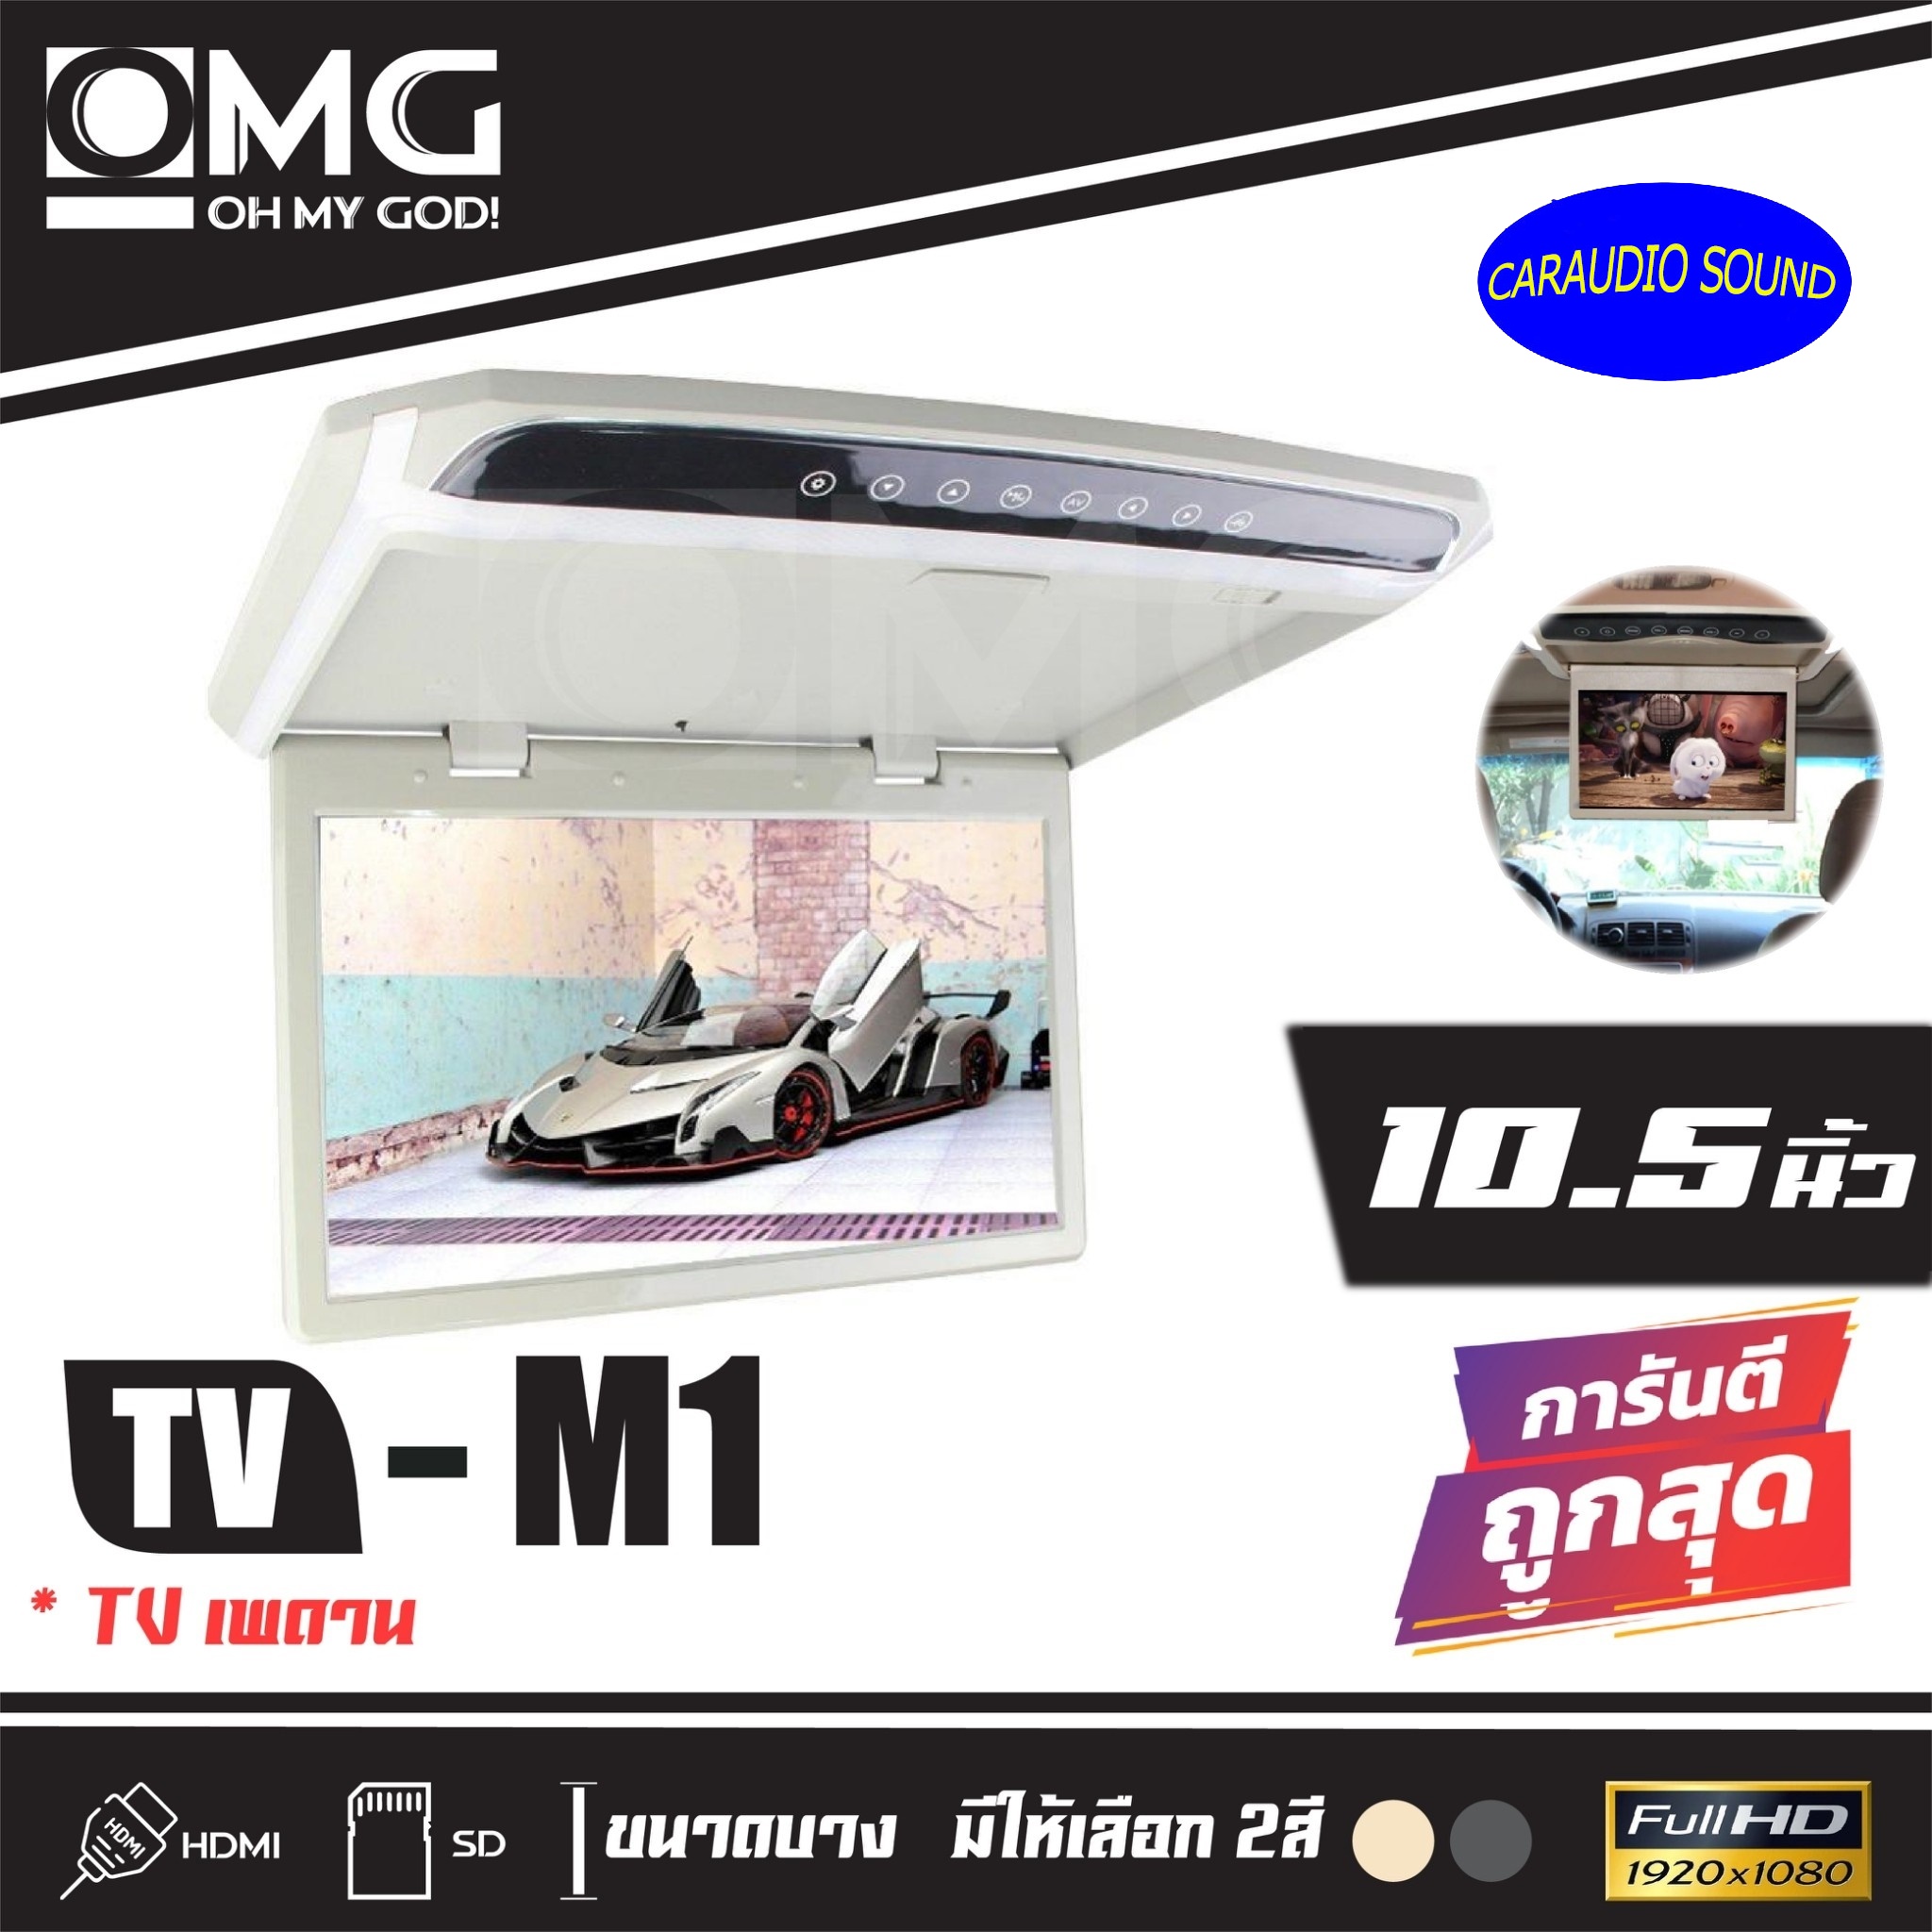 ทีวีเพดานติดรถยนต์ OMG M-1 10.5 TV ขนาดจอ 10.5 นิ้ว ราคา 2,990บาท สีเทา/สีครีม